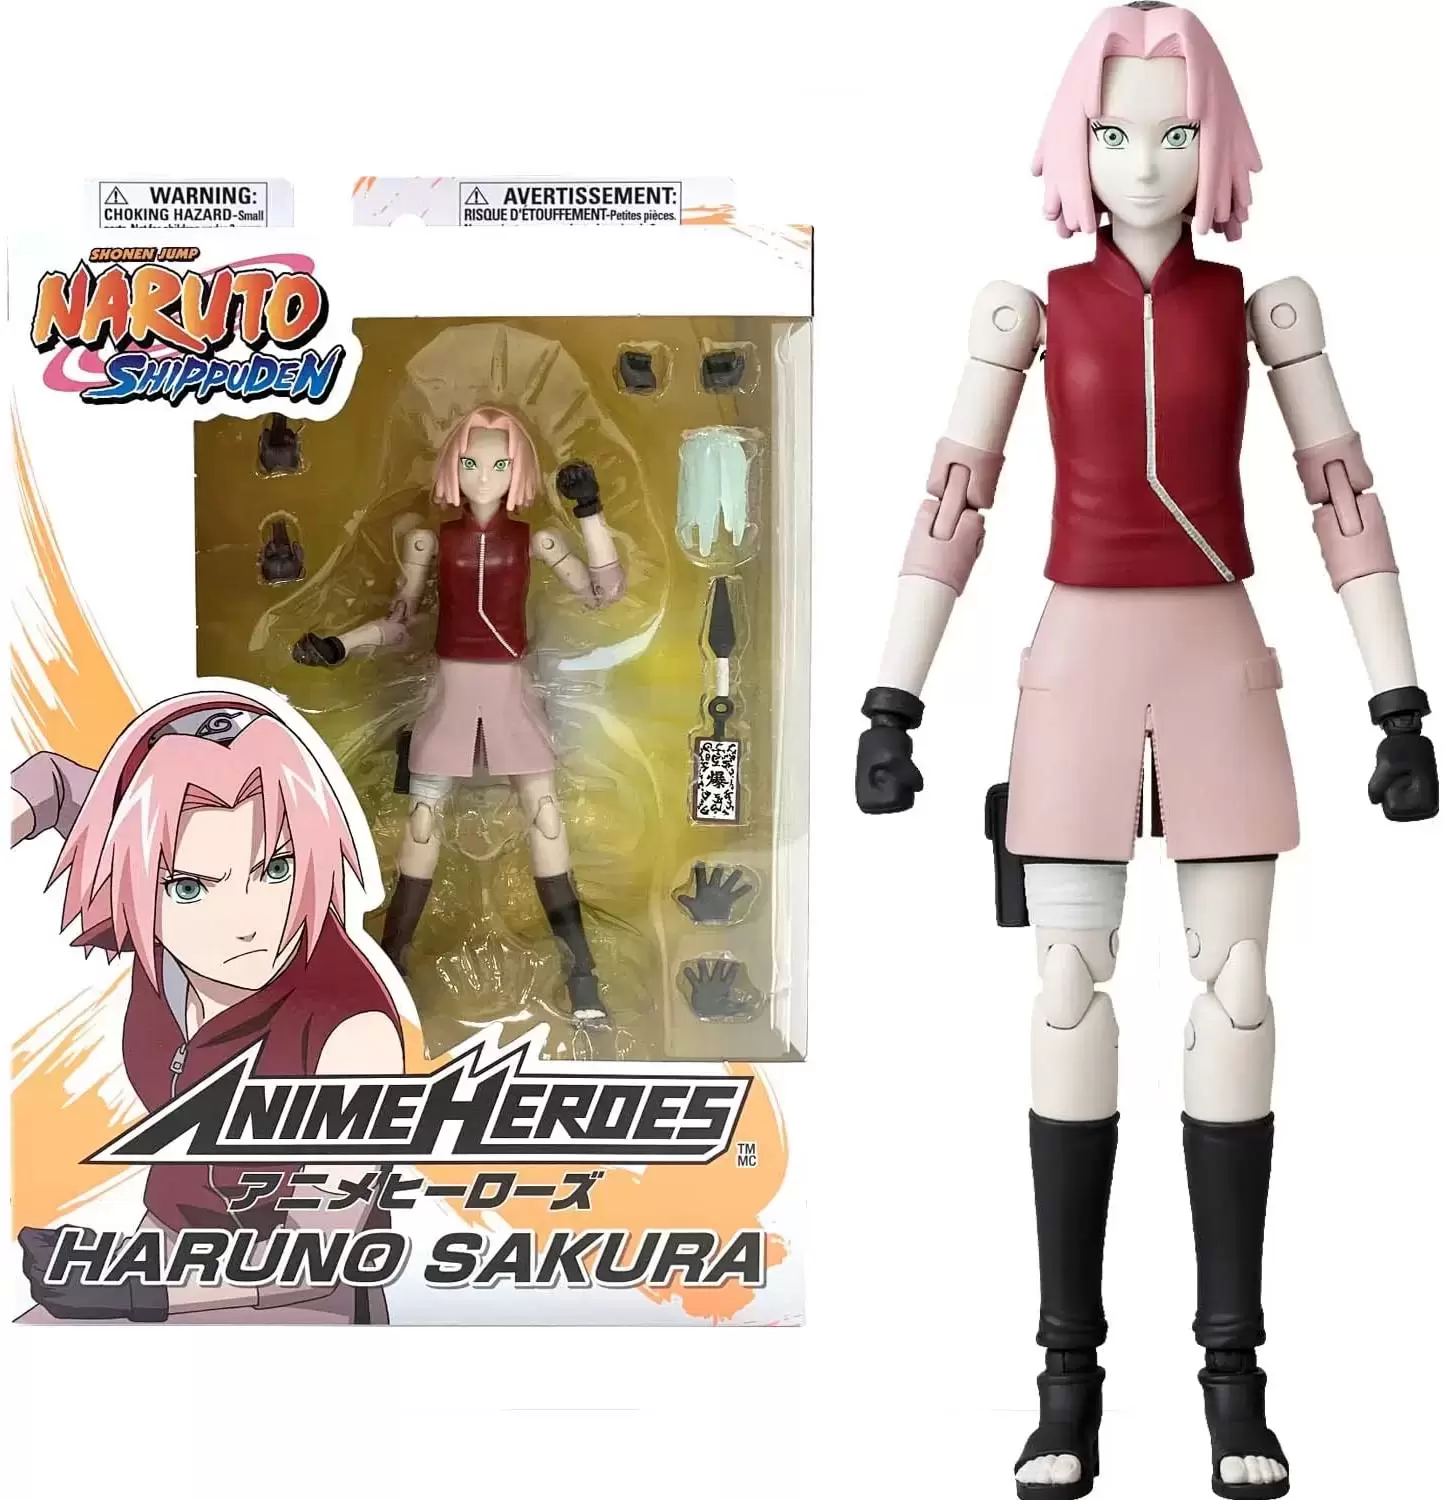 Anime Heroes - Bandai - Naruto Shippuden - Sakura Haruno